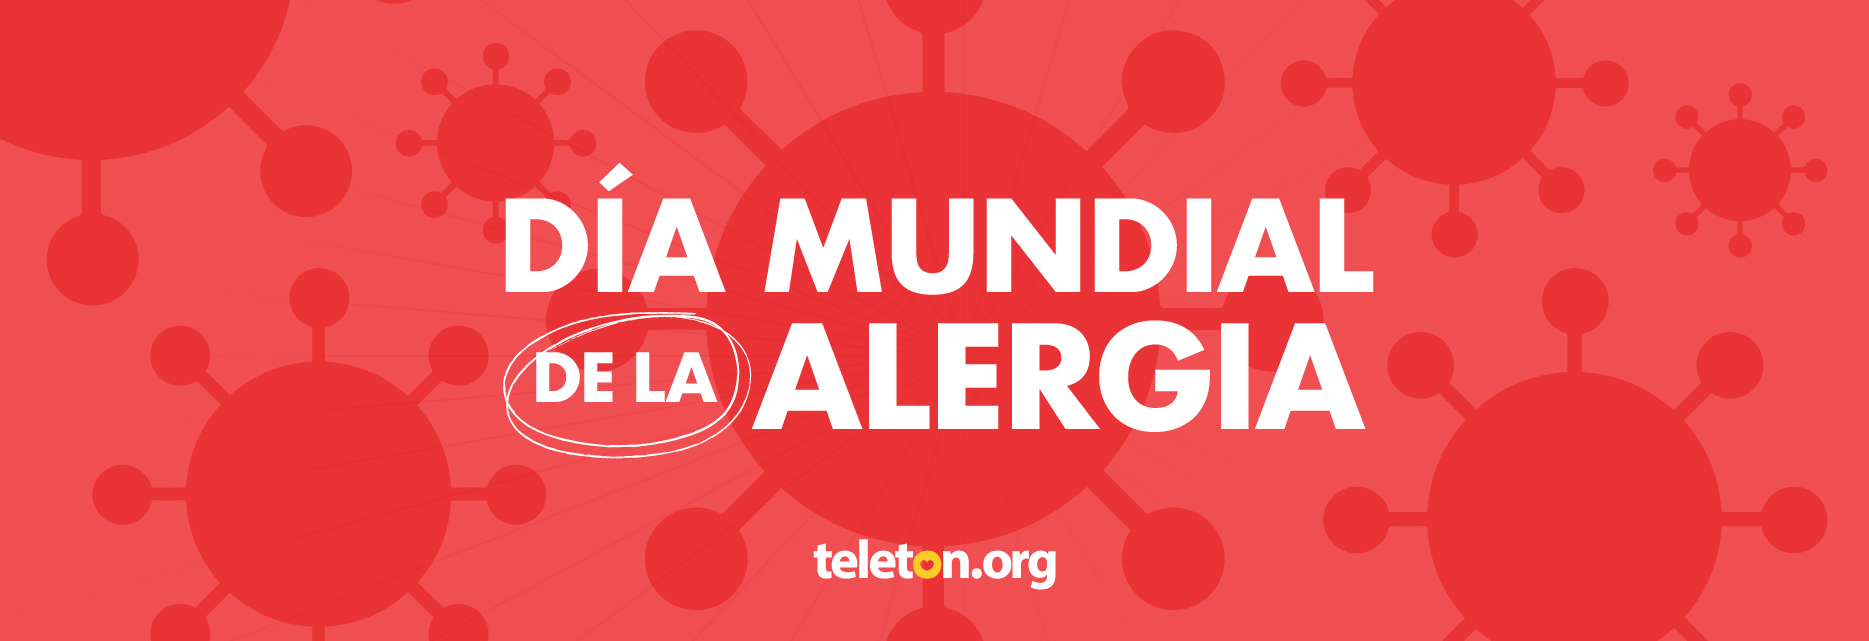 Imagen con fondo rojo y texto en color blanco que dice Día Mundial de la Alergia. En el fondo de la imagen una ilustración de una alérgeno.